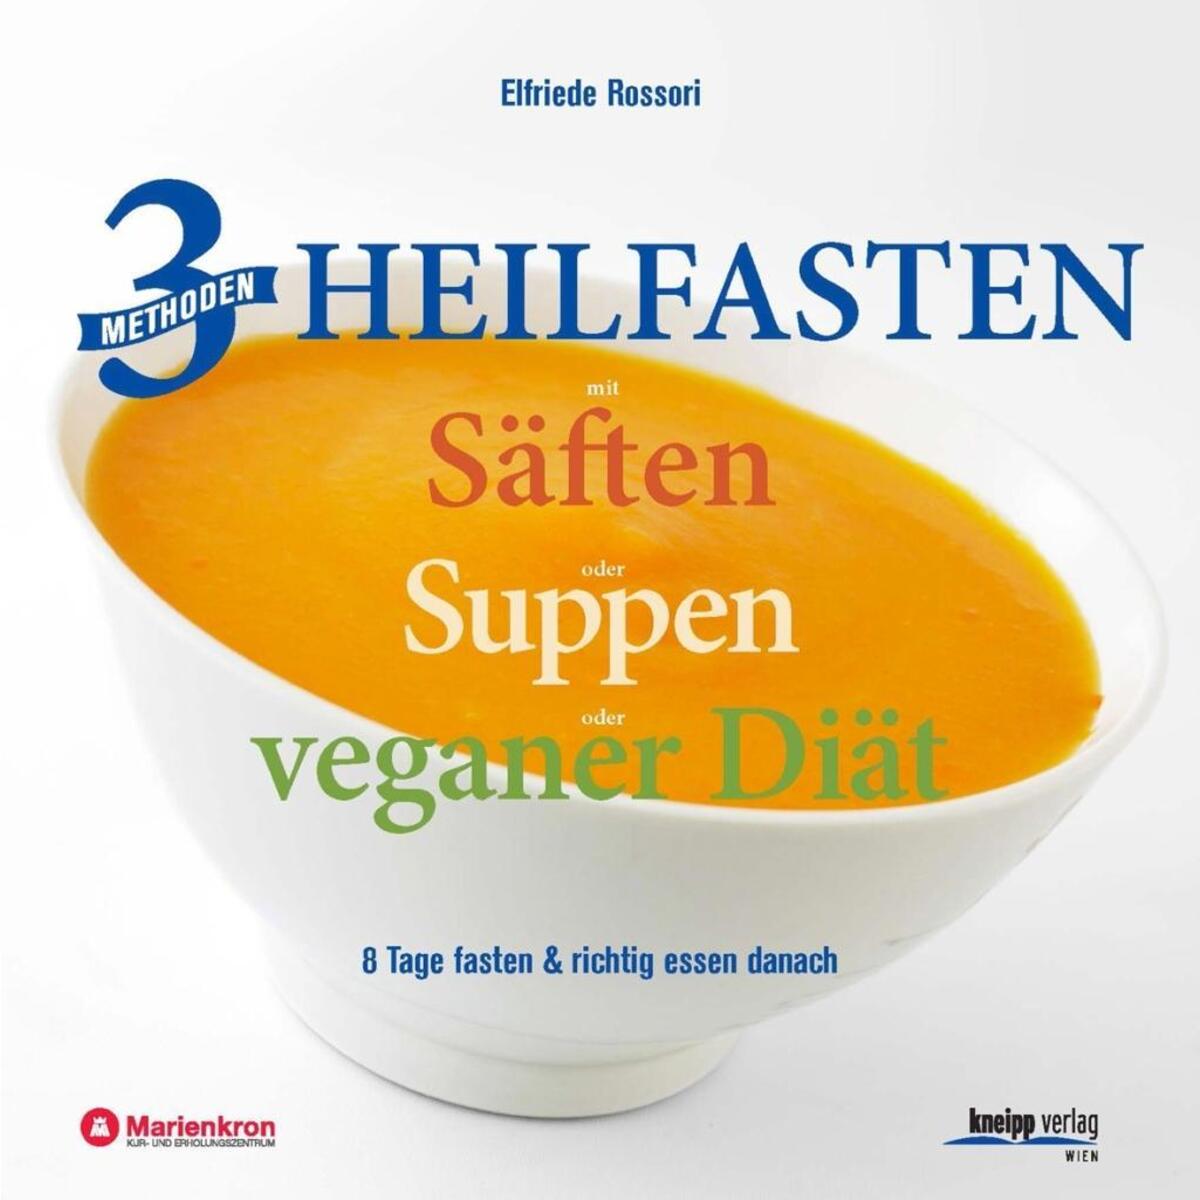 3 Methoden Heilfasten mit Säften oder Suppen oder veganer Diät von Kneipp Verlag